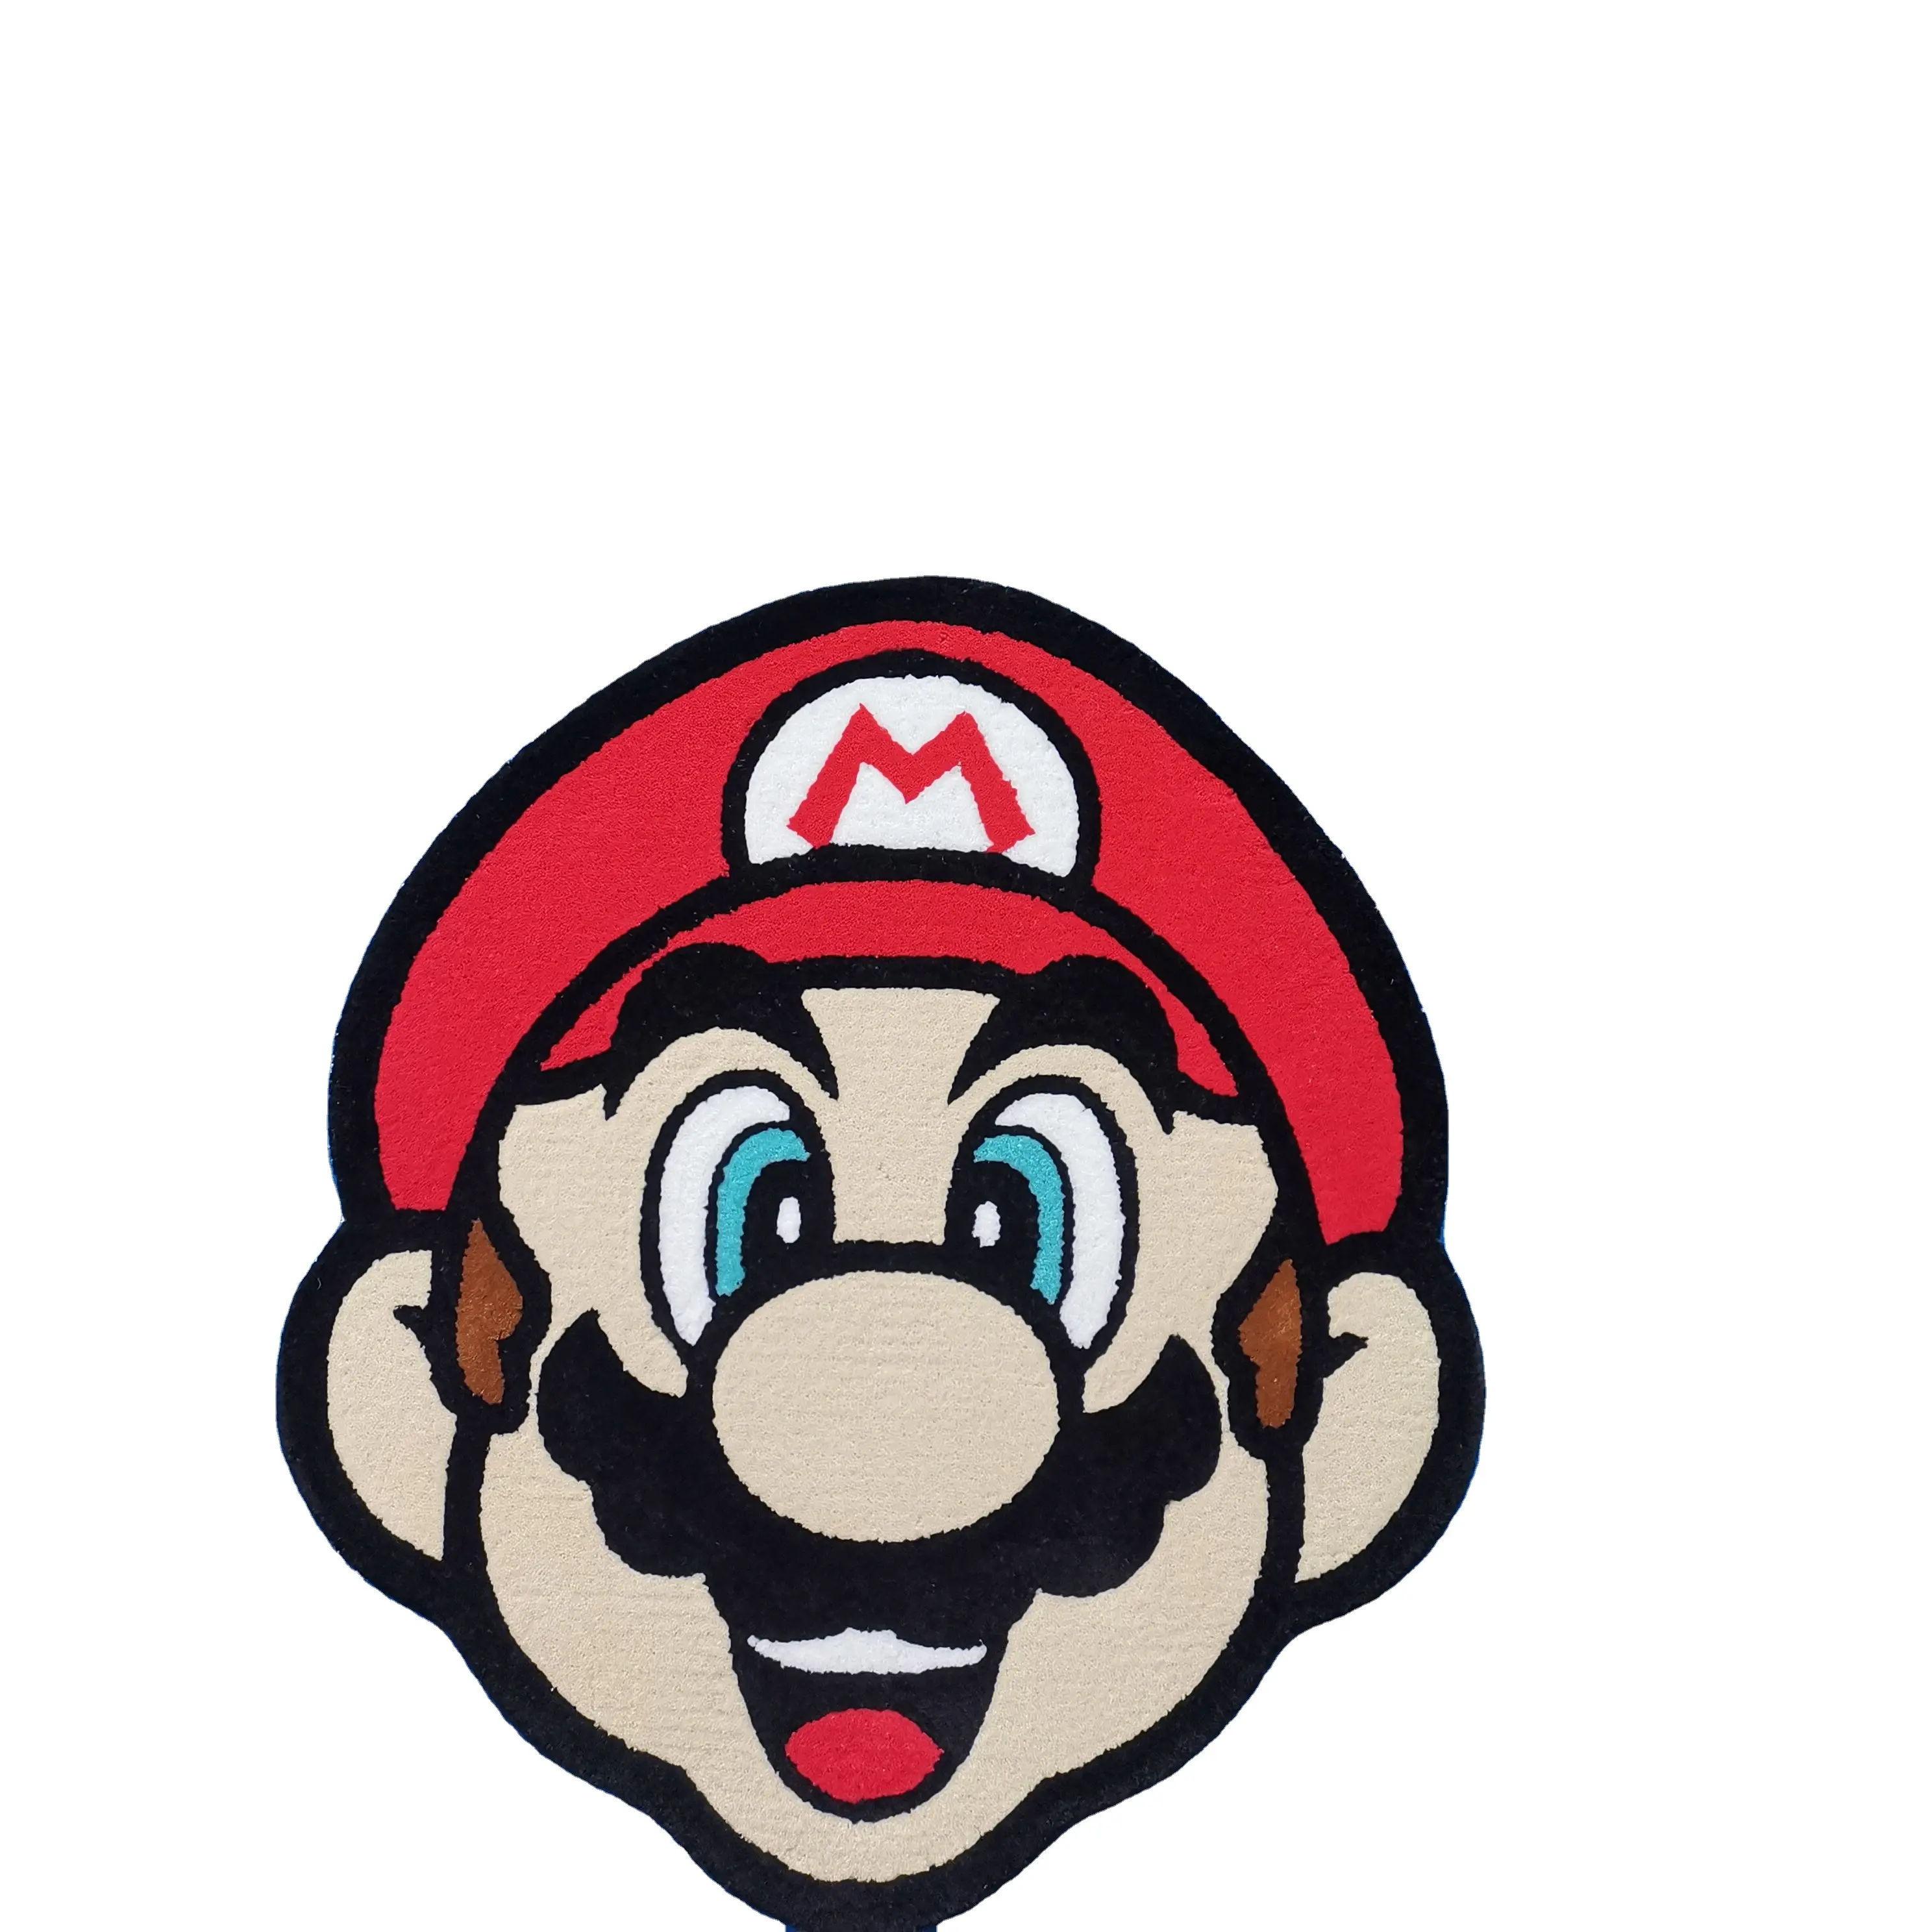 Mario Design Runner Tapetes Tapetes Personalizados Para Sala De Estar Tapete De Área De Piso Tapete De Luxo Feito À Mão